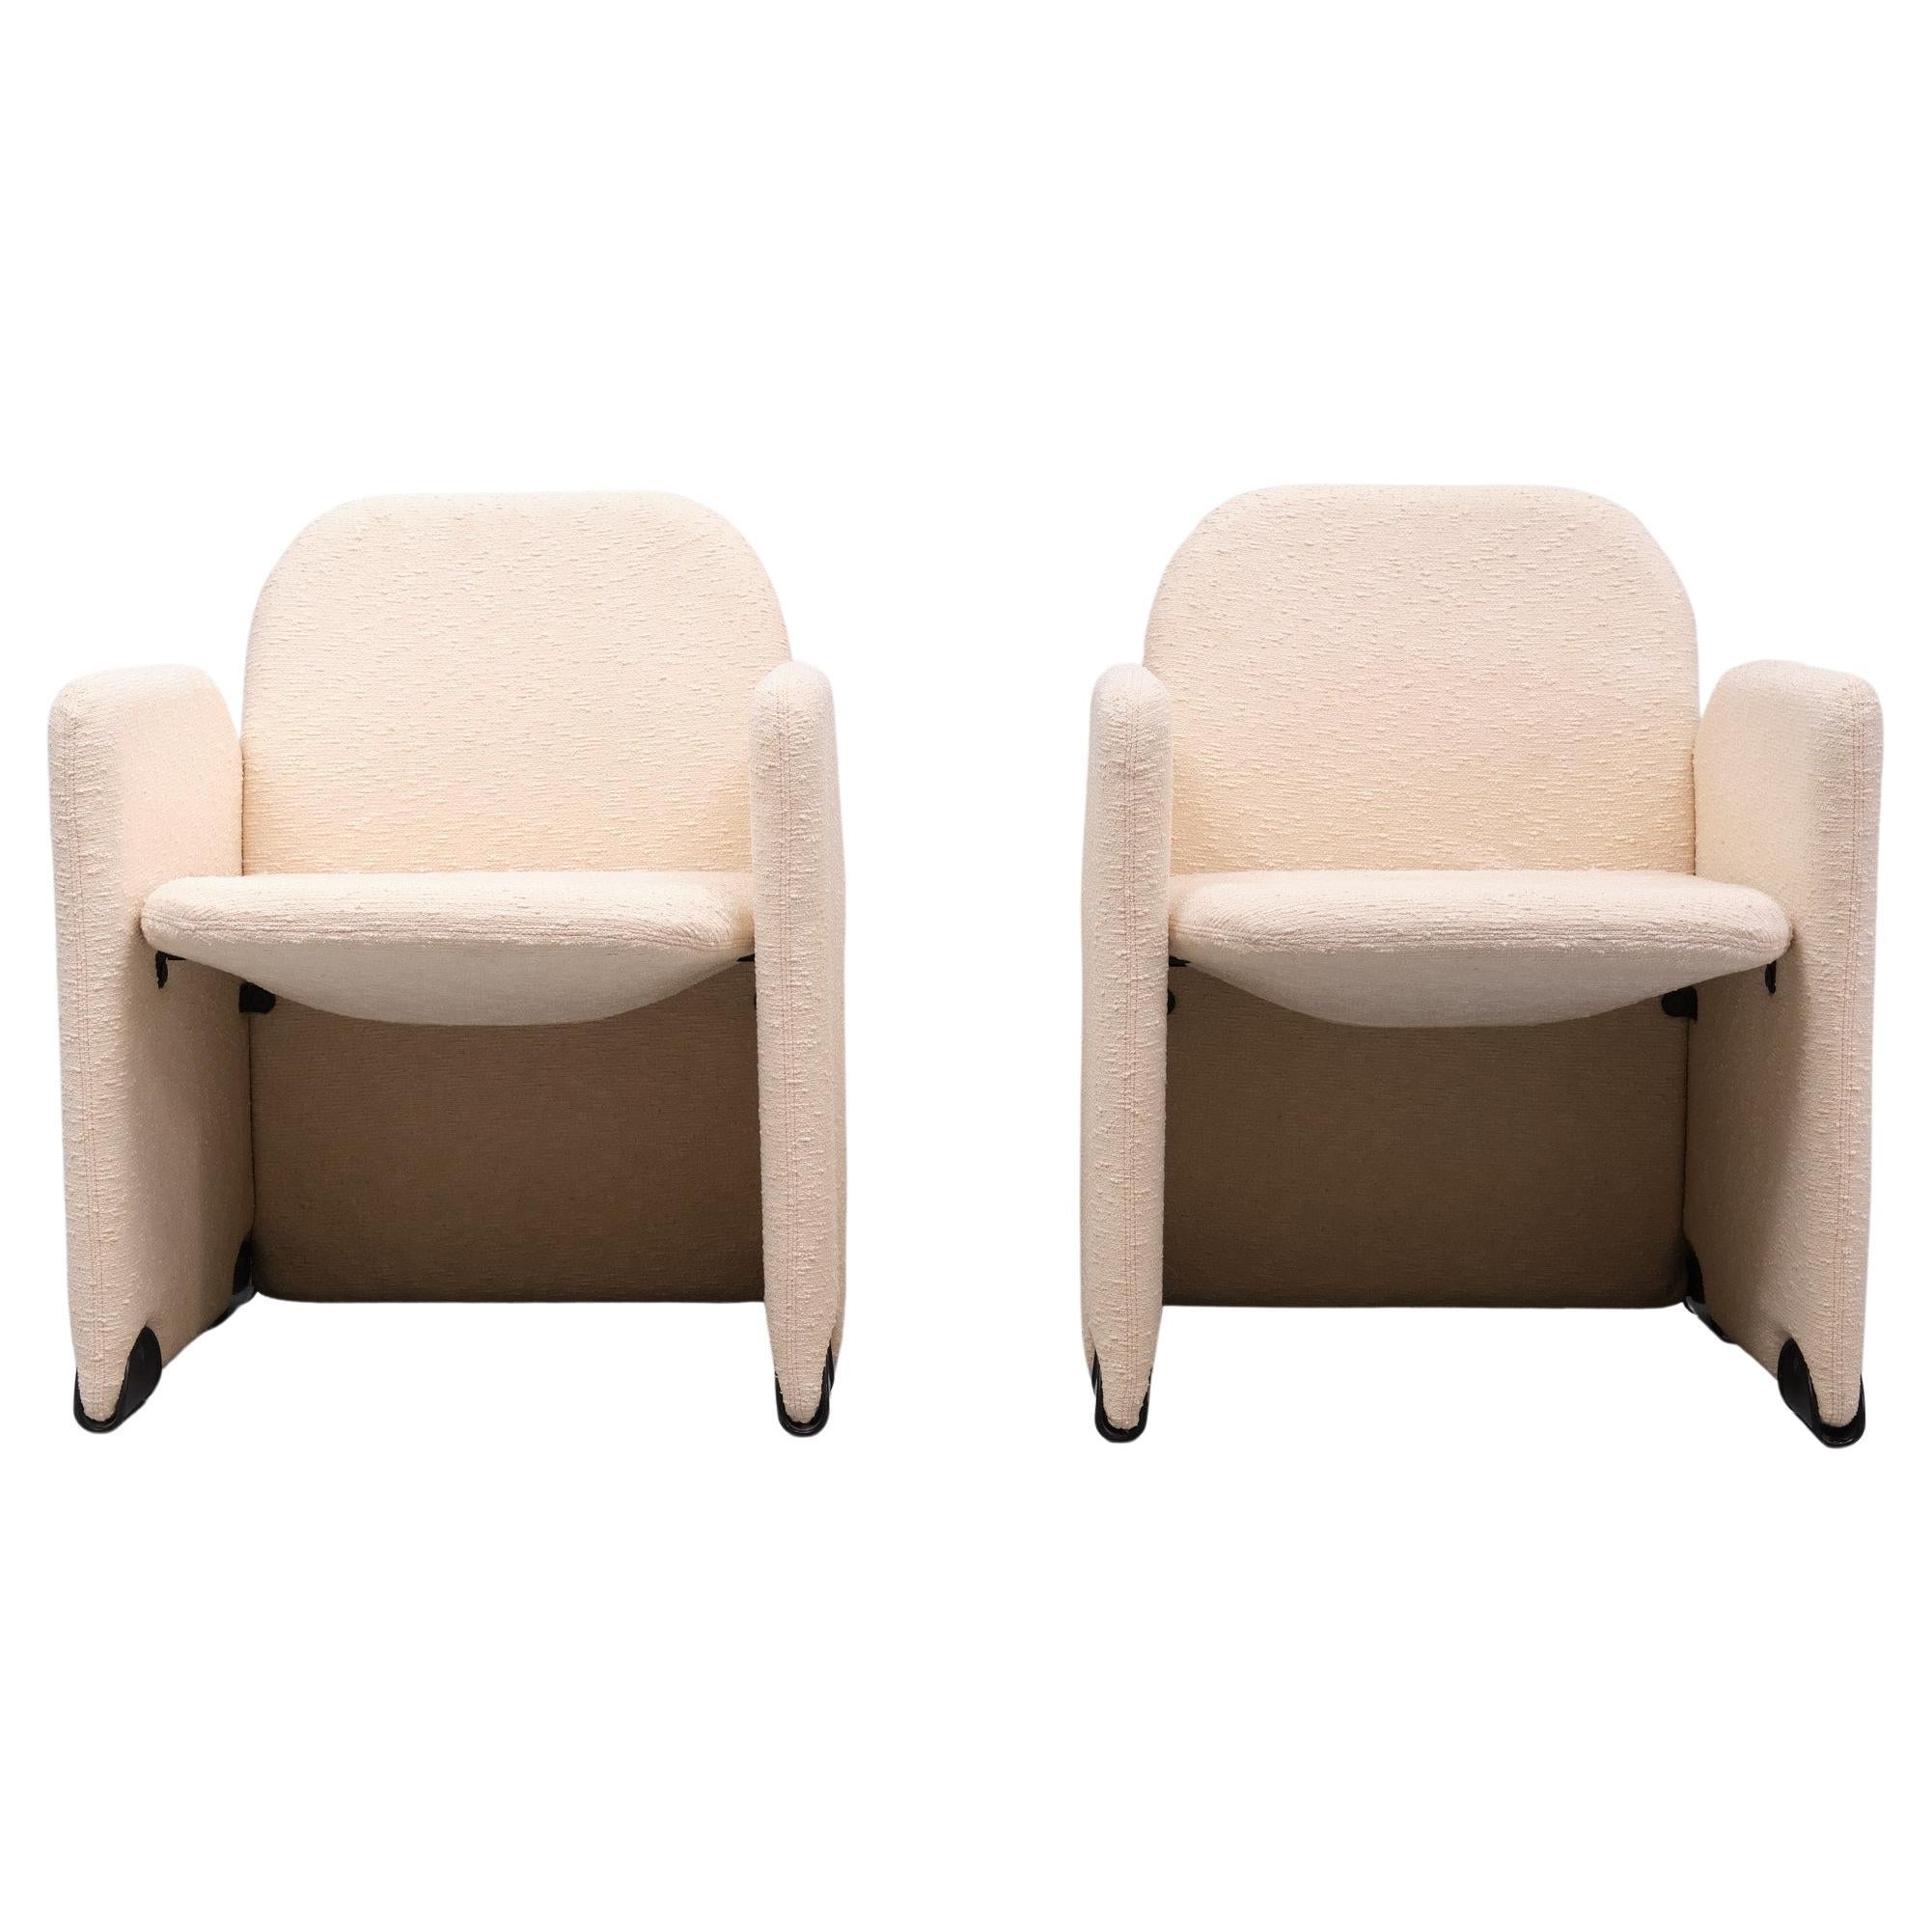 Schöne Kurven  auf diesen italienischen Designer-Stühlen aus den 70er Jahren. Entworfen von Ammannati und Vitelli für Brunati.  Original Elfenbeinfarbe  Bouclé-Stoff mit kontrastierenden, signierten schwarzen Kunststofffüßen. In gutem